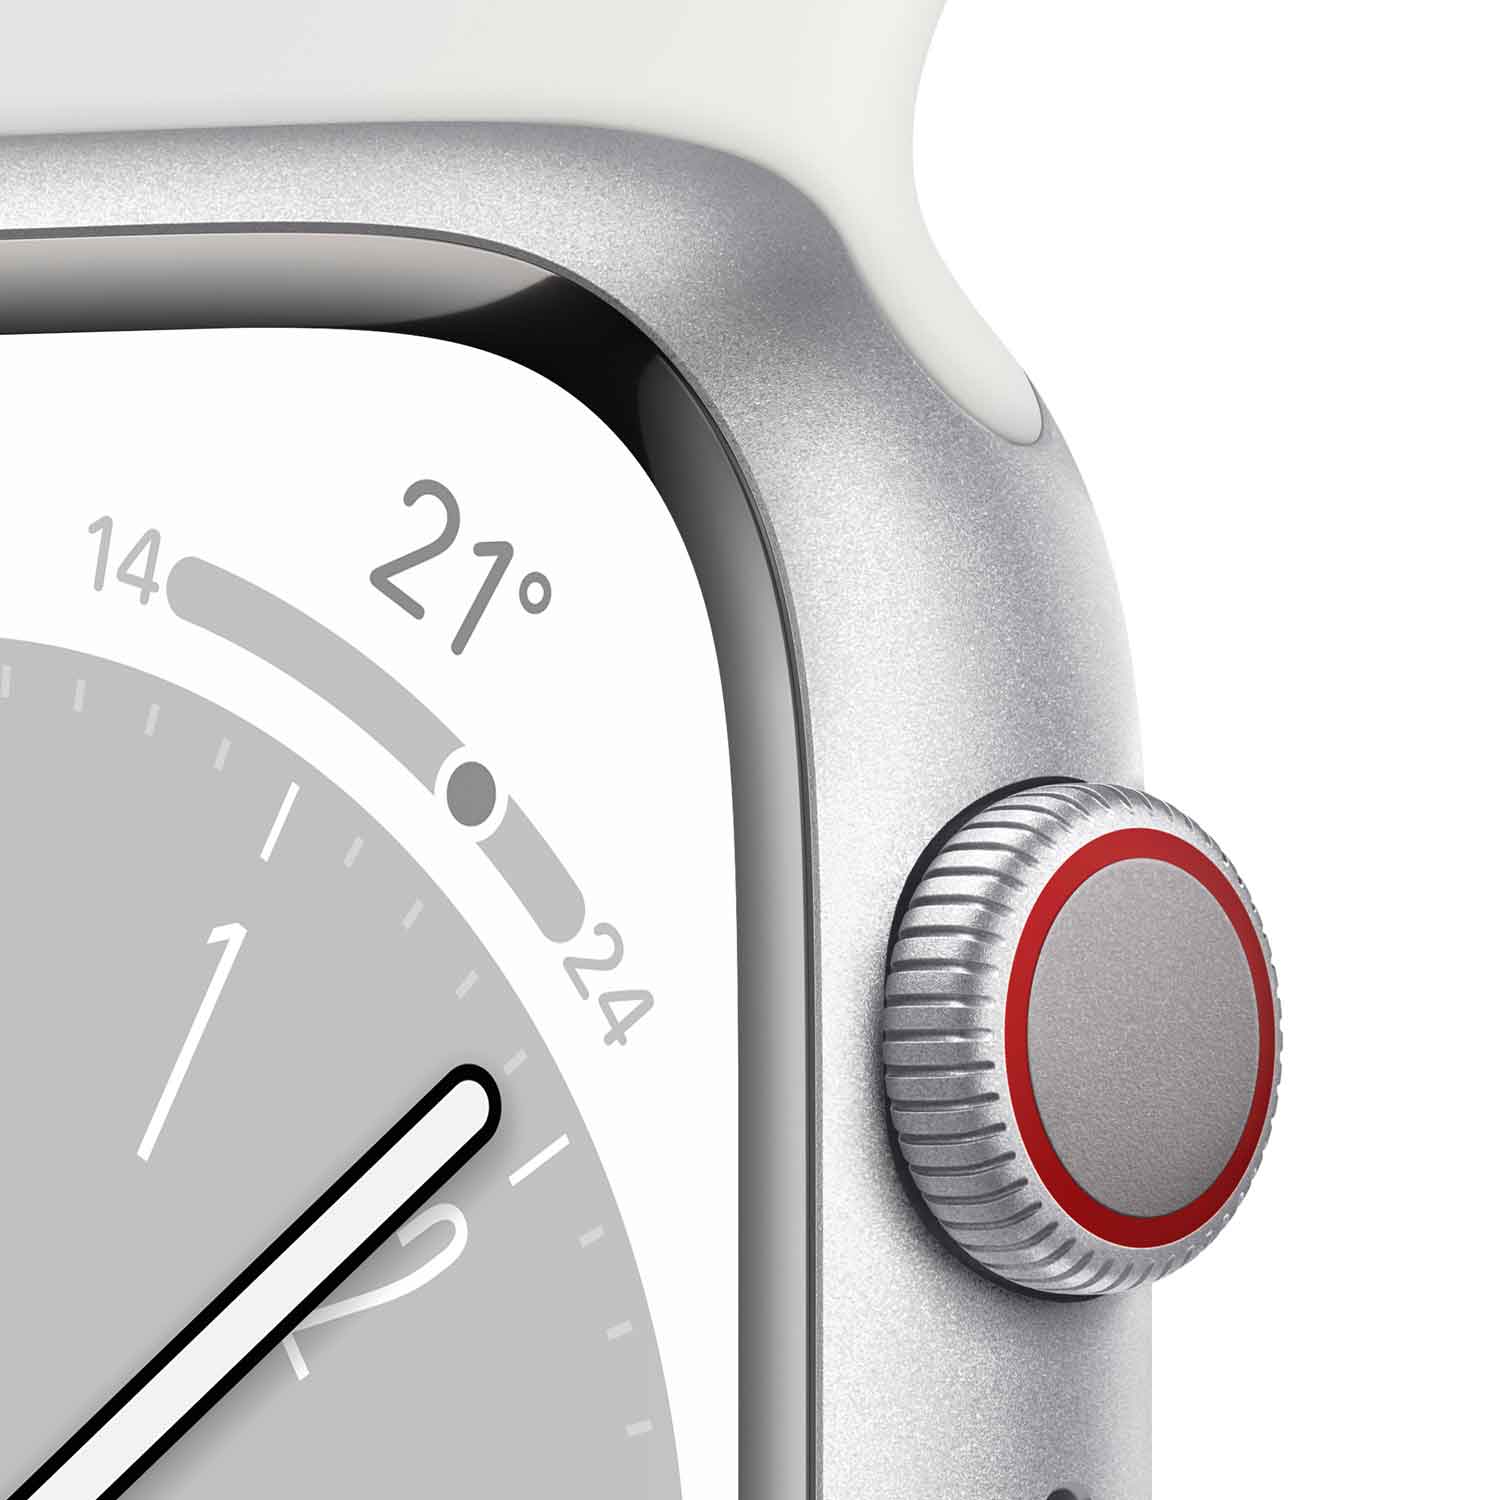 Apple Watch S8 Aluminium Cellular 45mm silber (Sportarmband weiß)